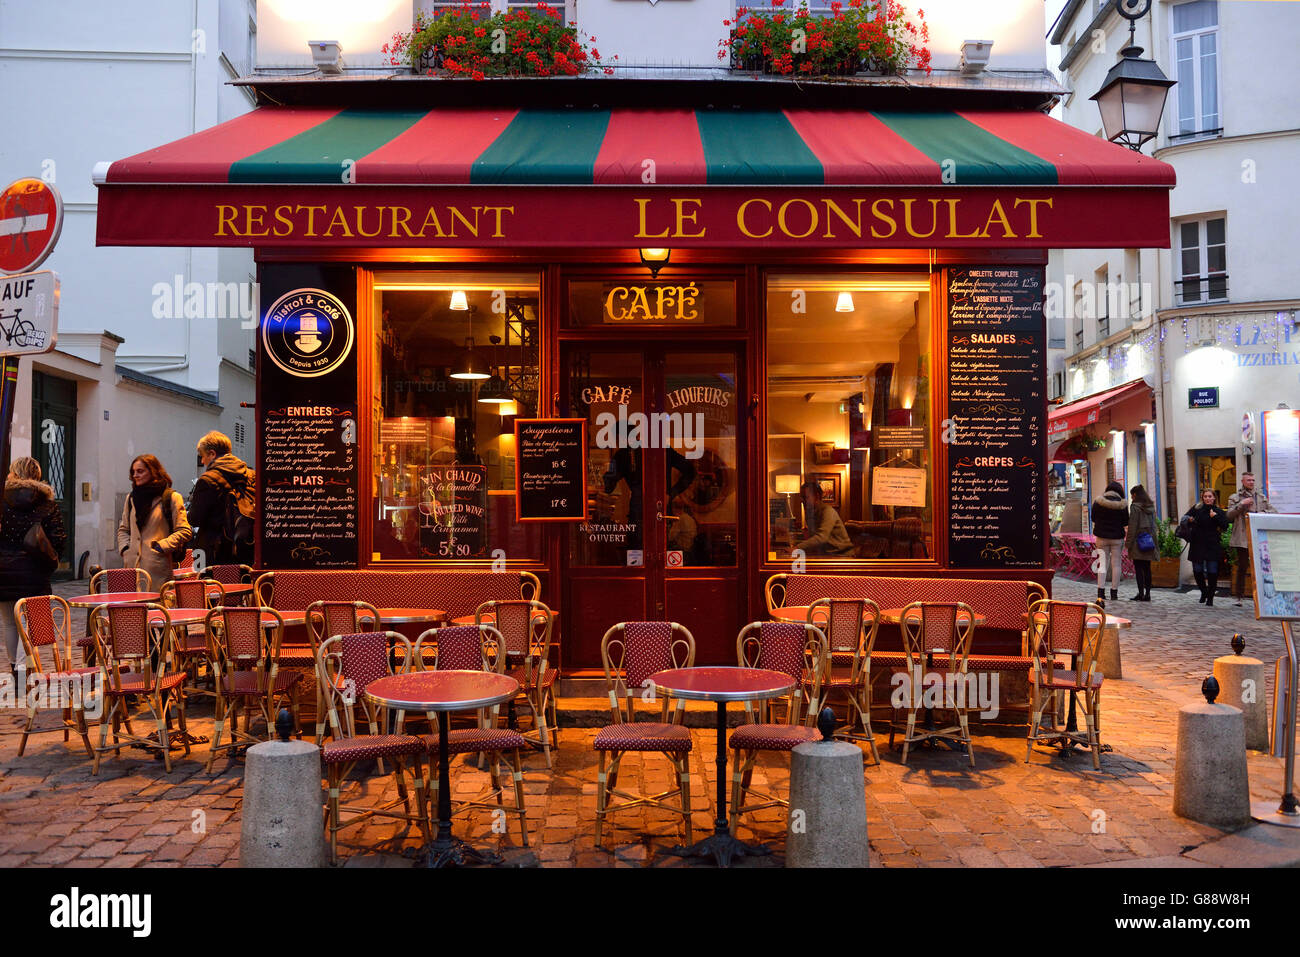 Restaurant Le Consulat, Montmartre, Paris, France Stock Photo